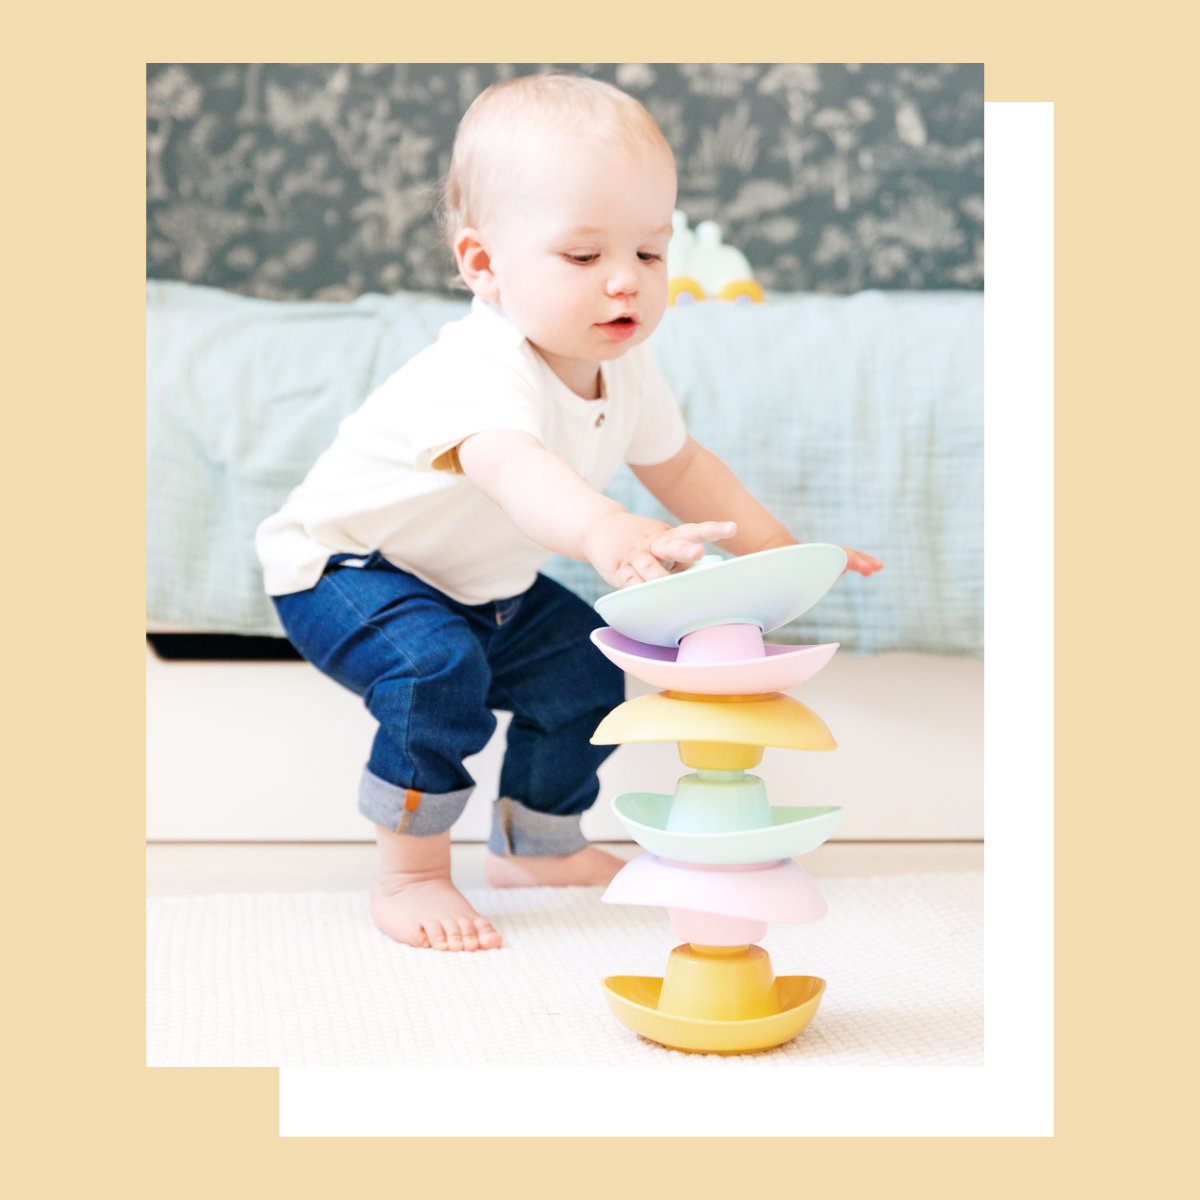 Bébé s'amusant à empiler les coupelles de couleurs pastelle made in France de la marque Le Jouet Simple